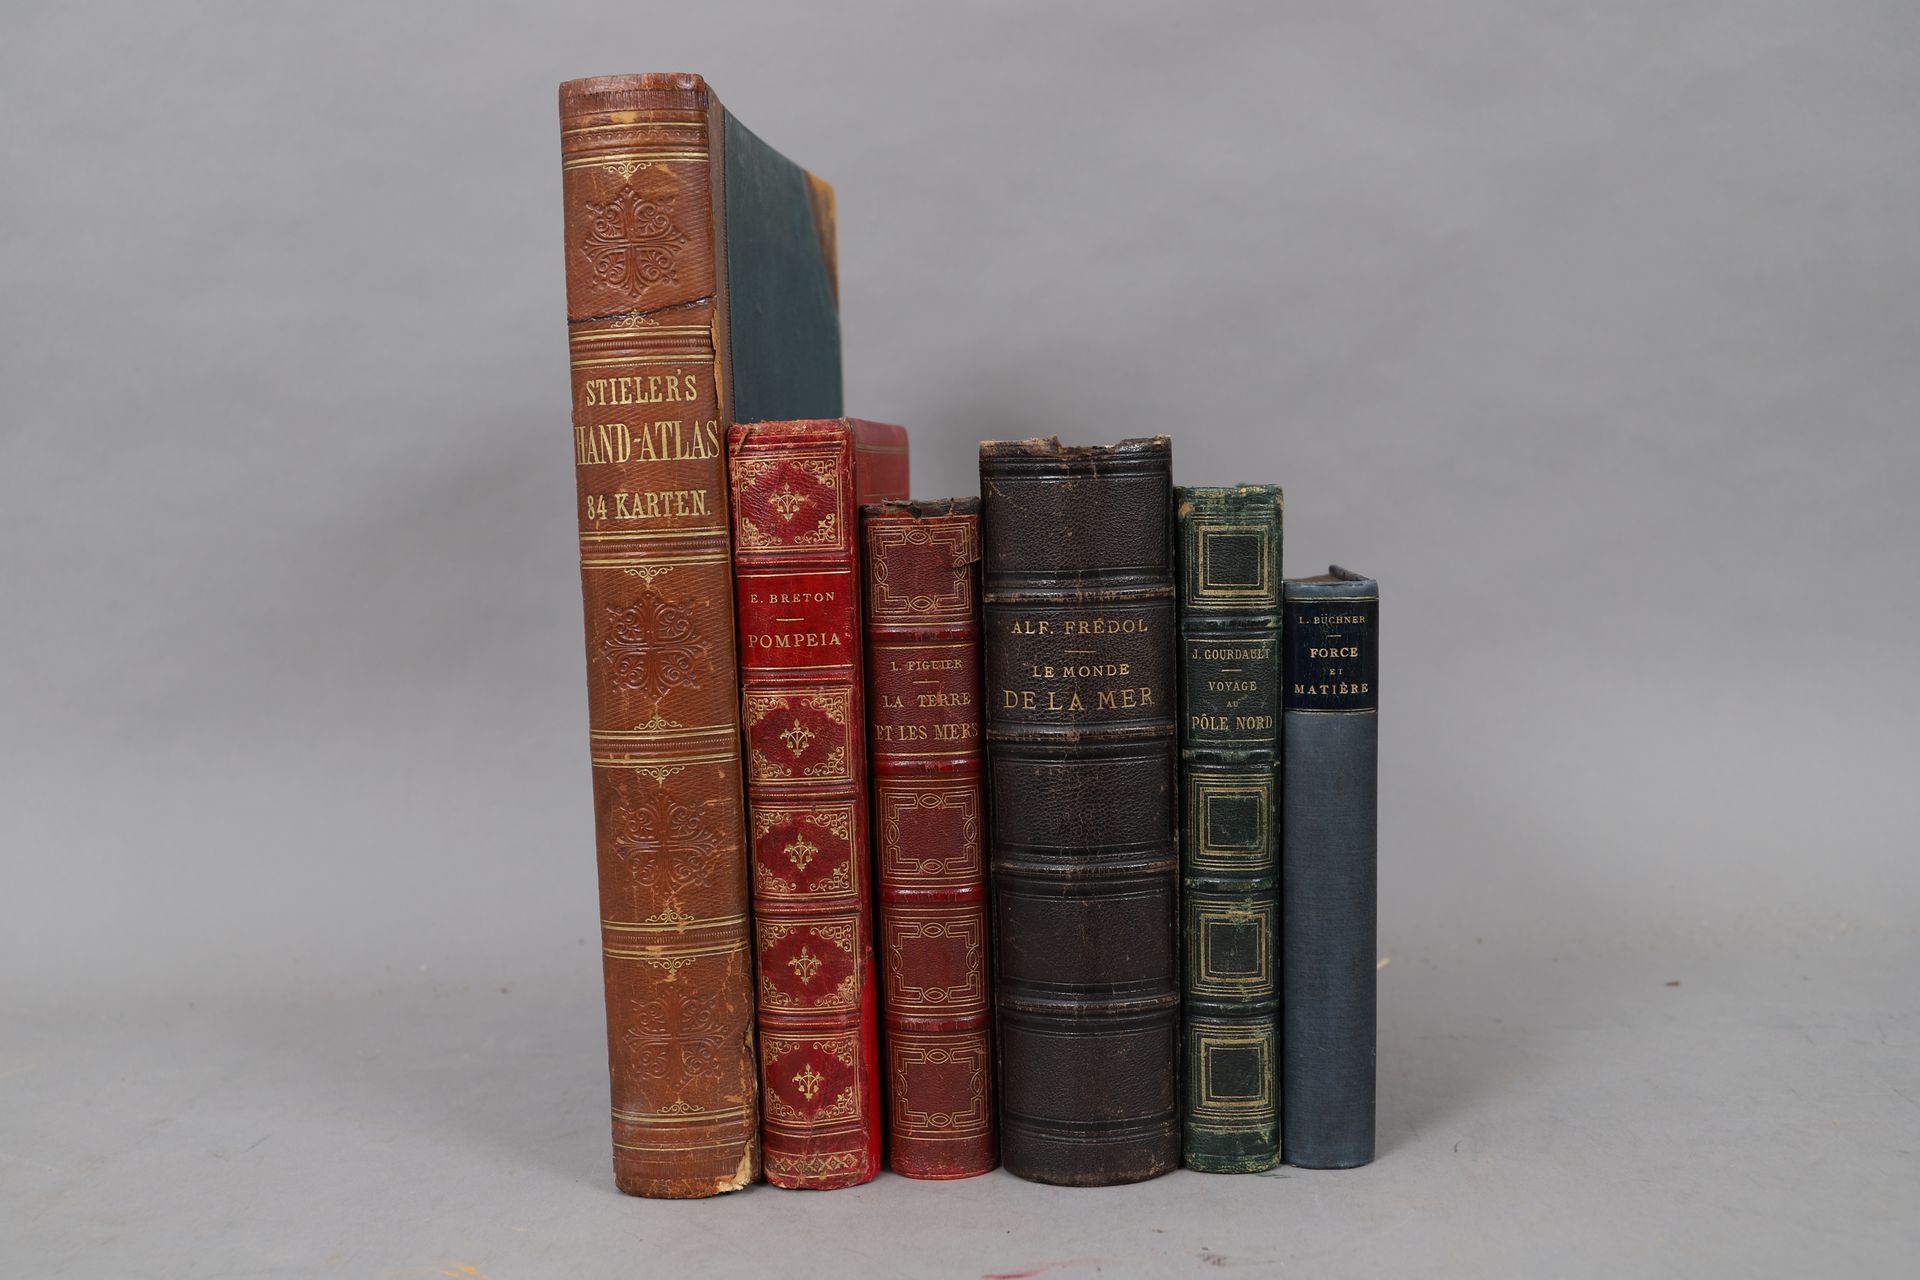 Null VIAJES y GEOGRAFÍA

LOTE de 6 volúmenes encuadernados

Siglos XIX y XX